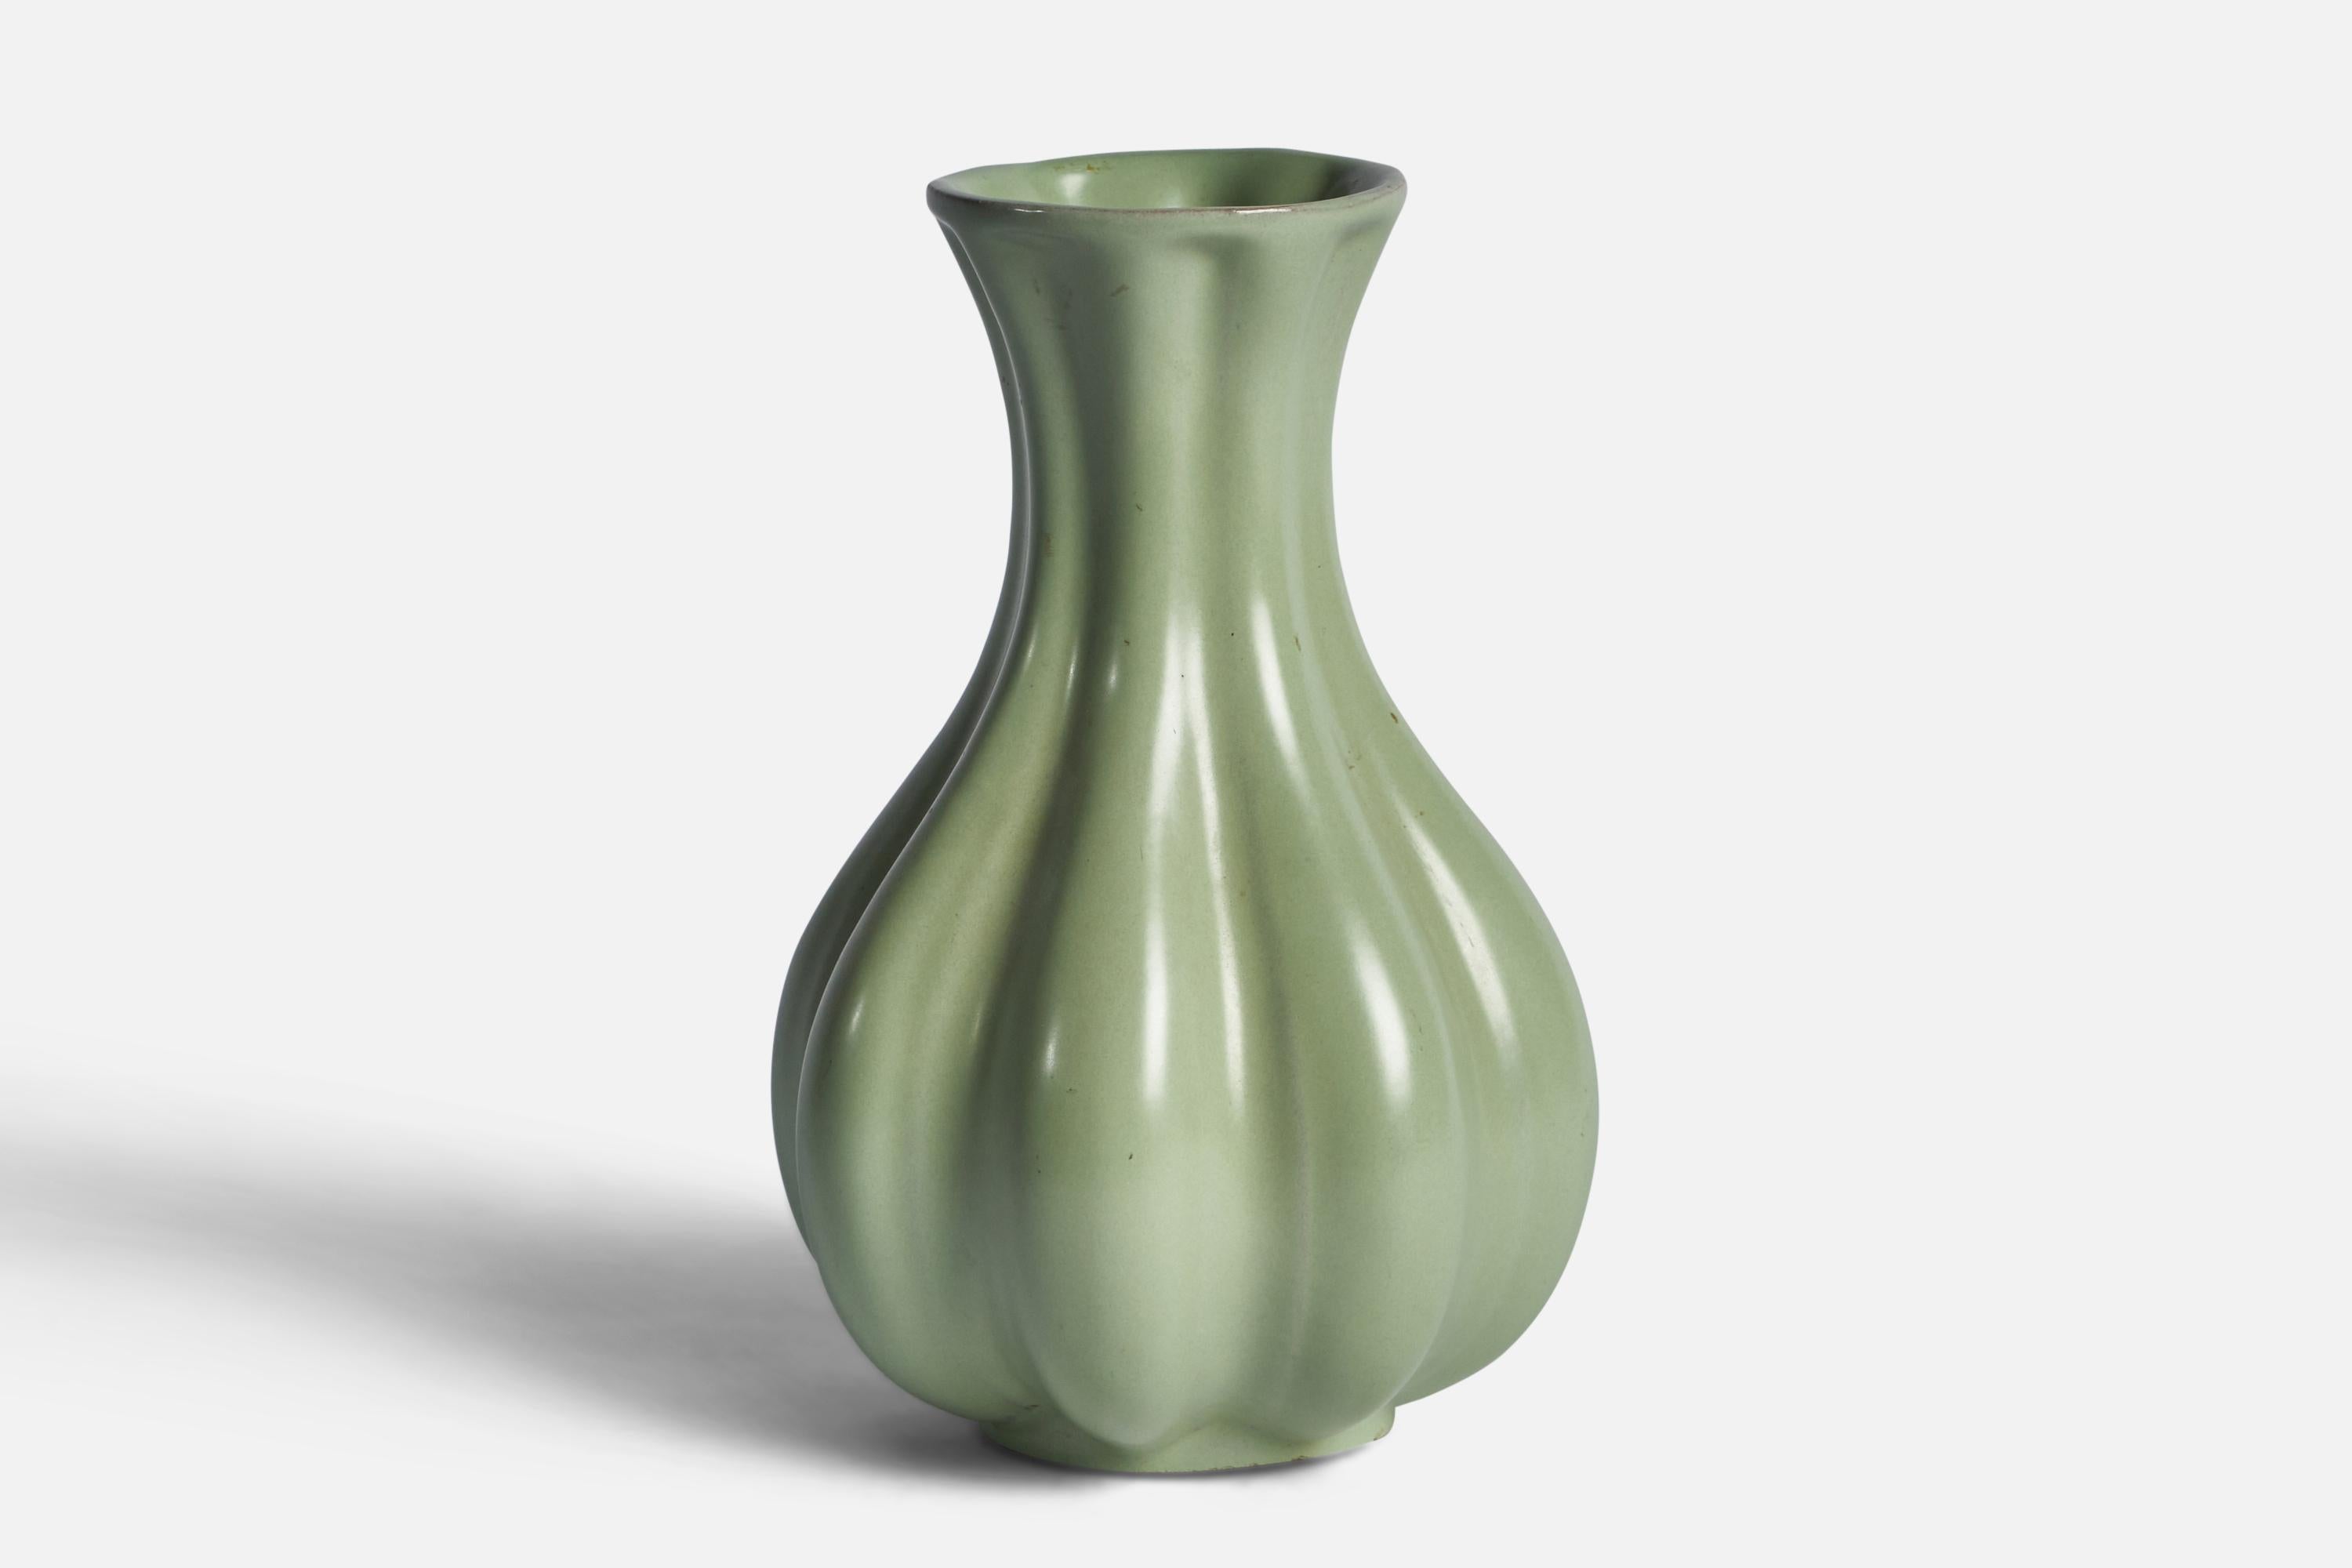 A fluted celadon-green-glazed earthenware vase designed and produced by Upsala Ekeby, Sweden, 1930s.